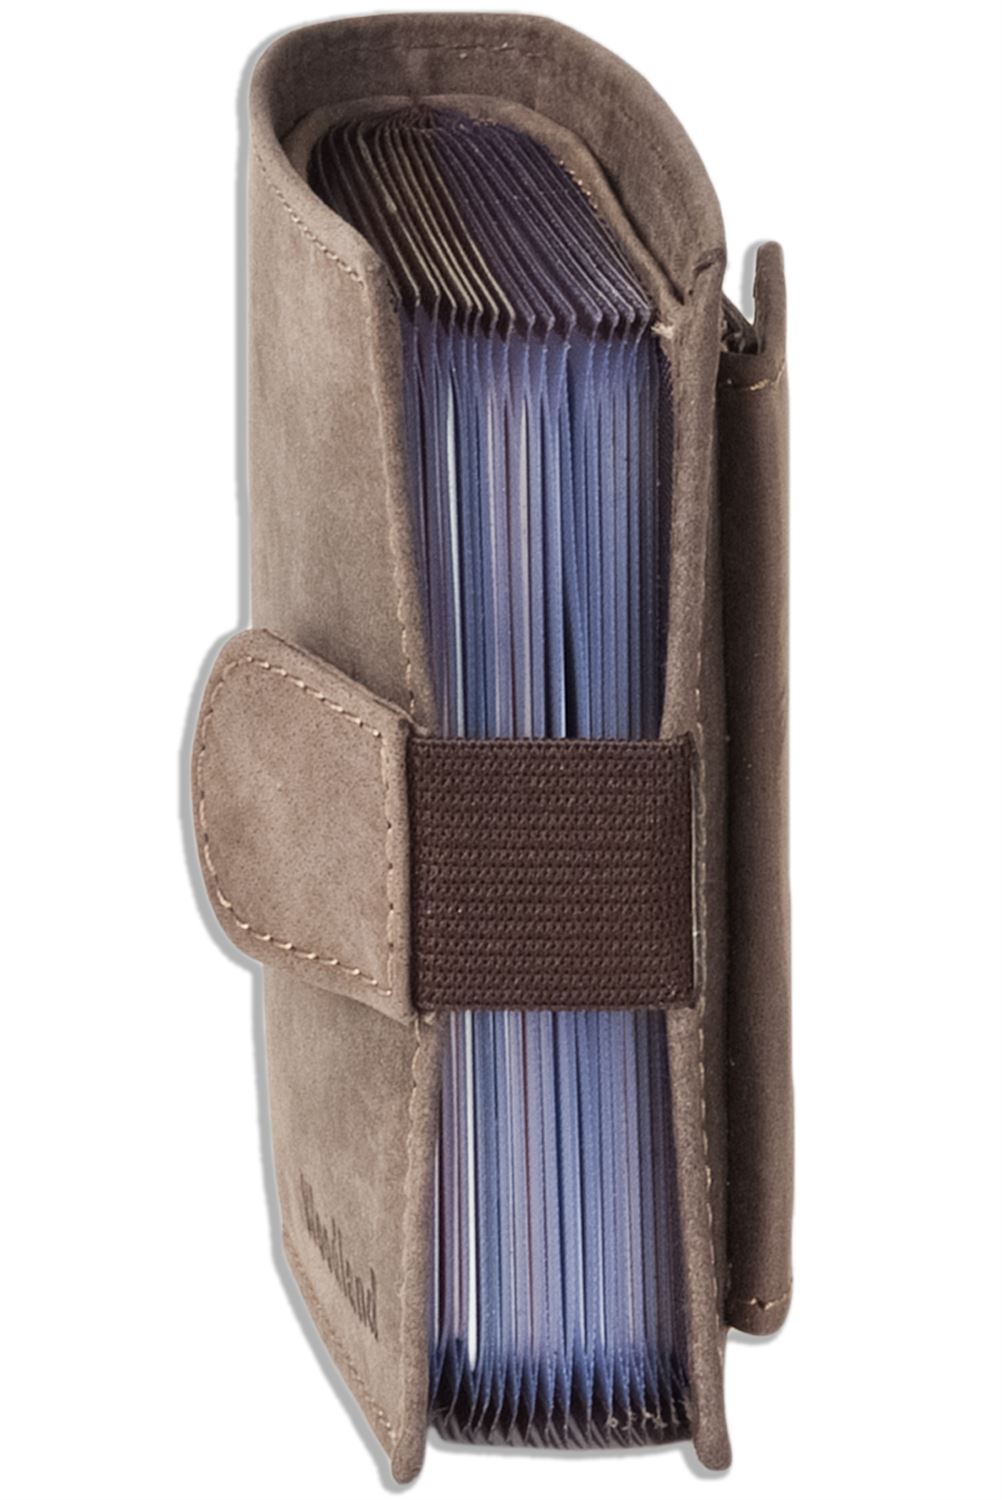 Woodland® Kompakte Geldbörse mit 18 Kartentaschen aus Büffelleder in Hellbraun 